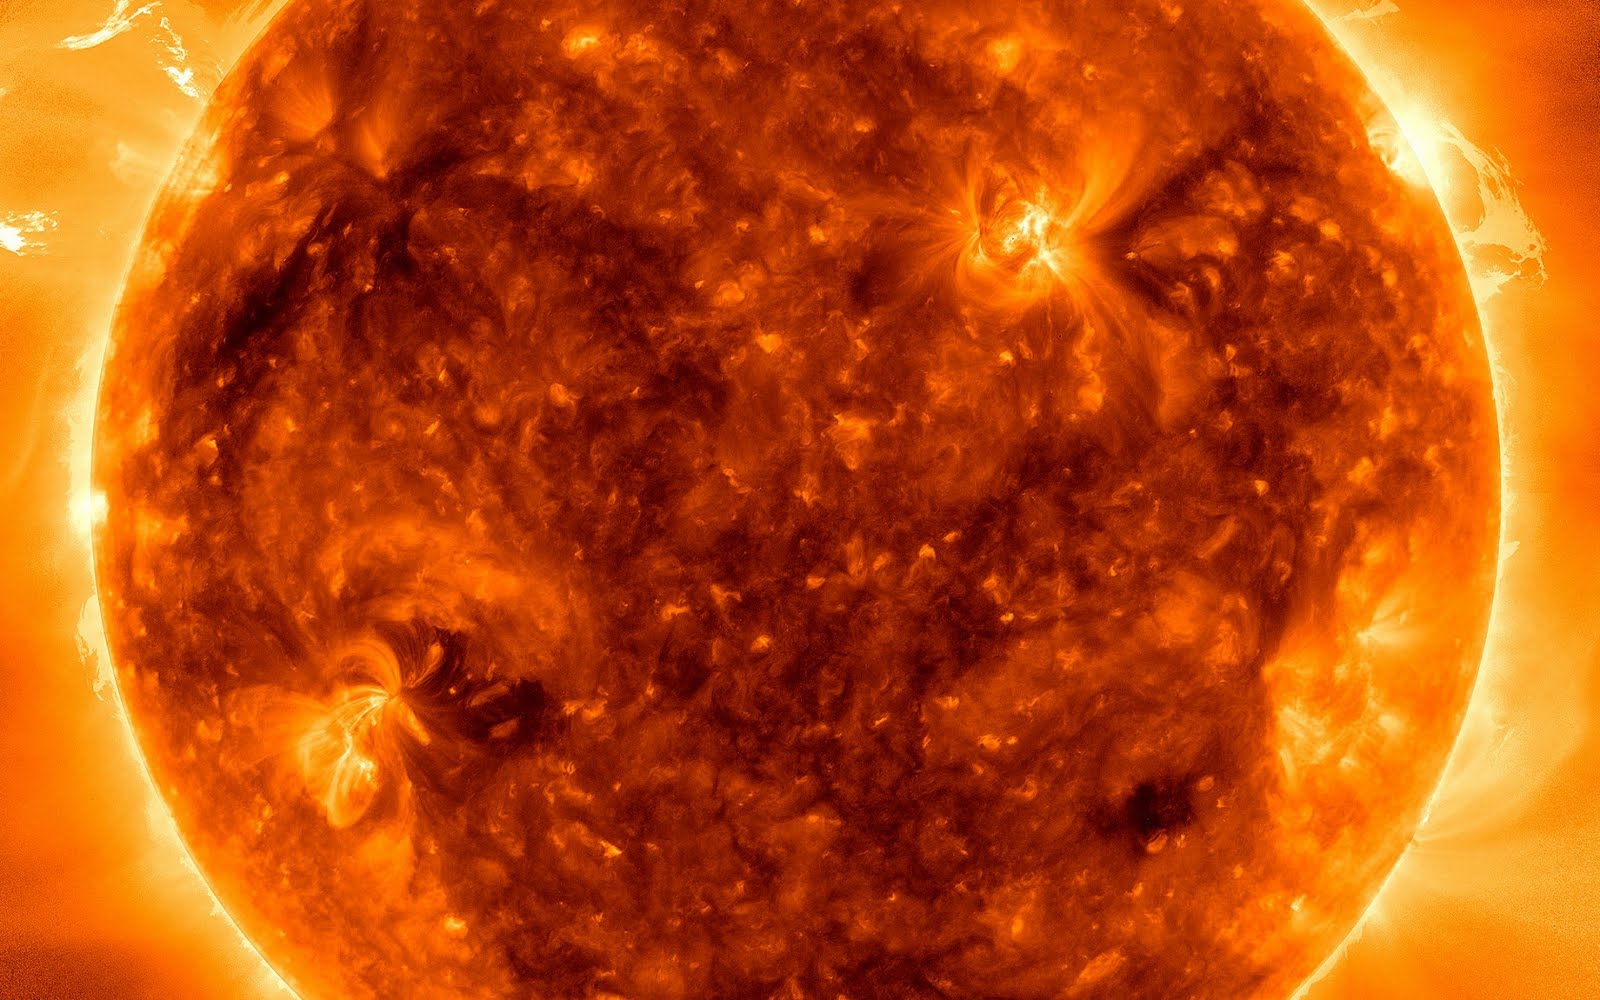 Sun%2BExplosion.jpg